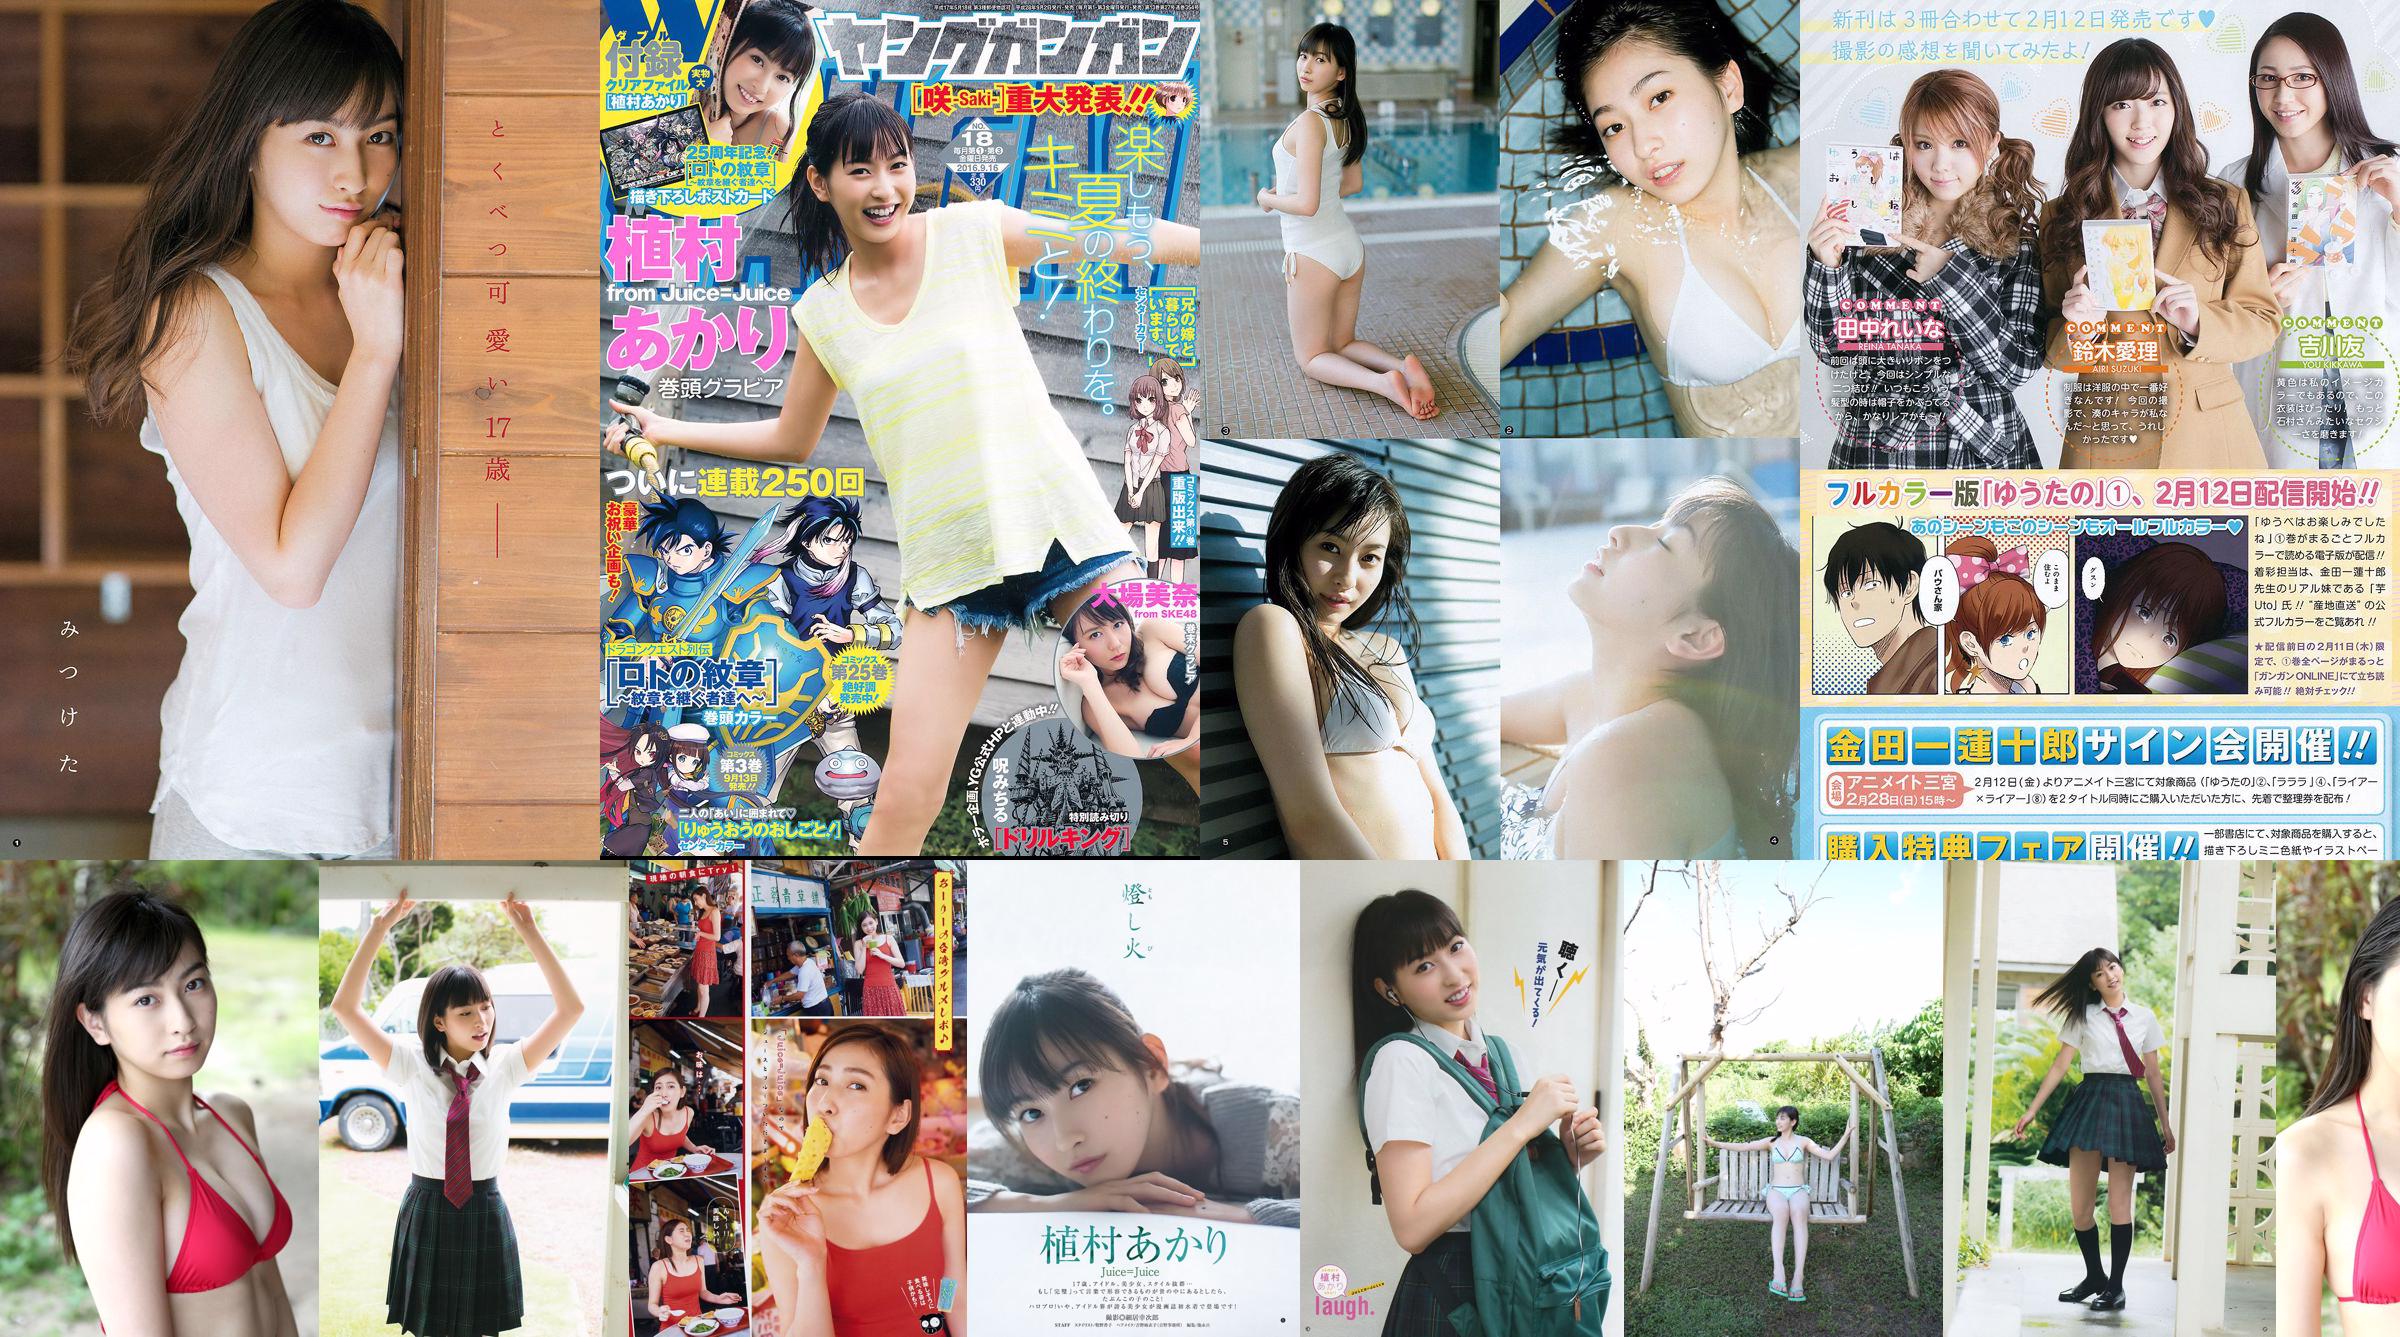 [Revista Young] Akari Uemura Yume Hayashi 2018 No.31 Fotografia No.5deeb6 Página 1